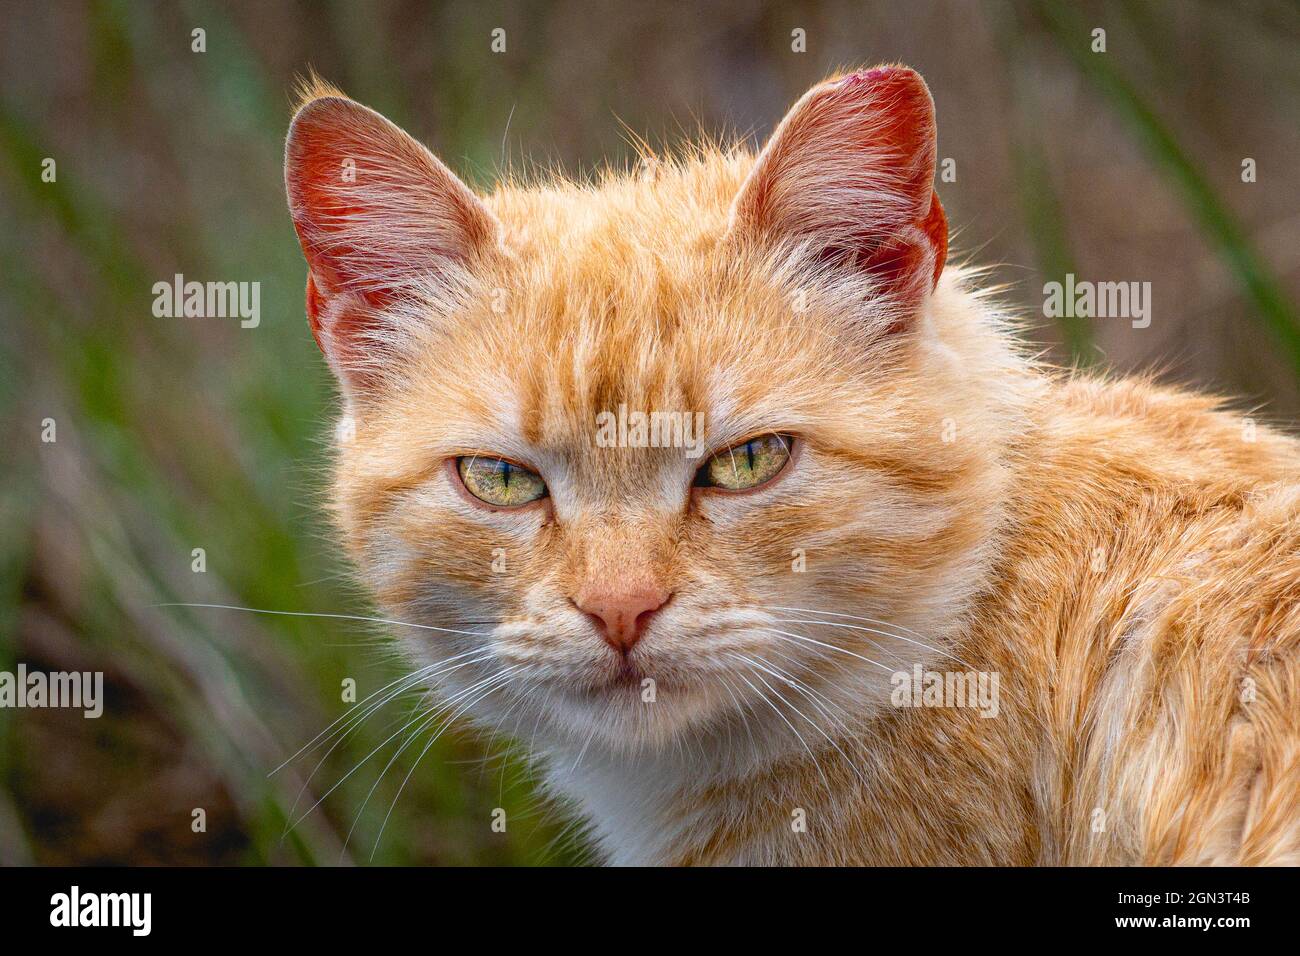 Street cat on a rainy day Stock Photo